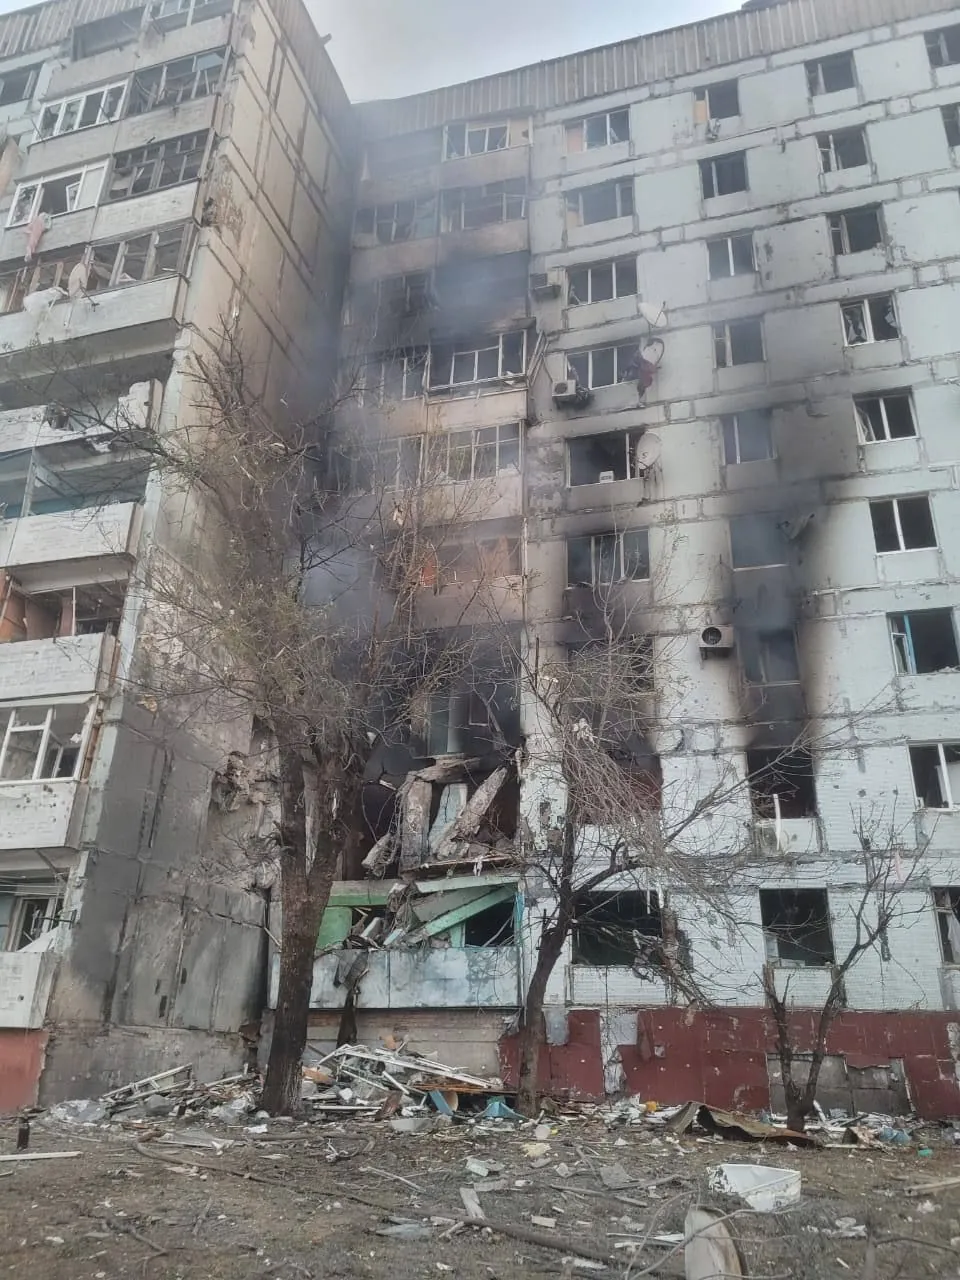 Zaporizhzhia region suffered 498 strikes per day, 16 settlements were damaged